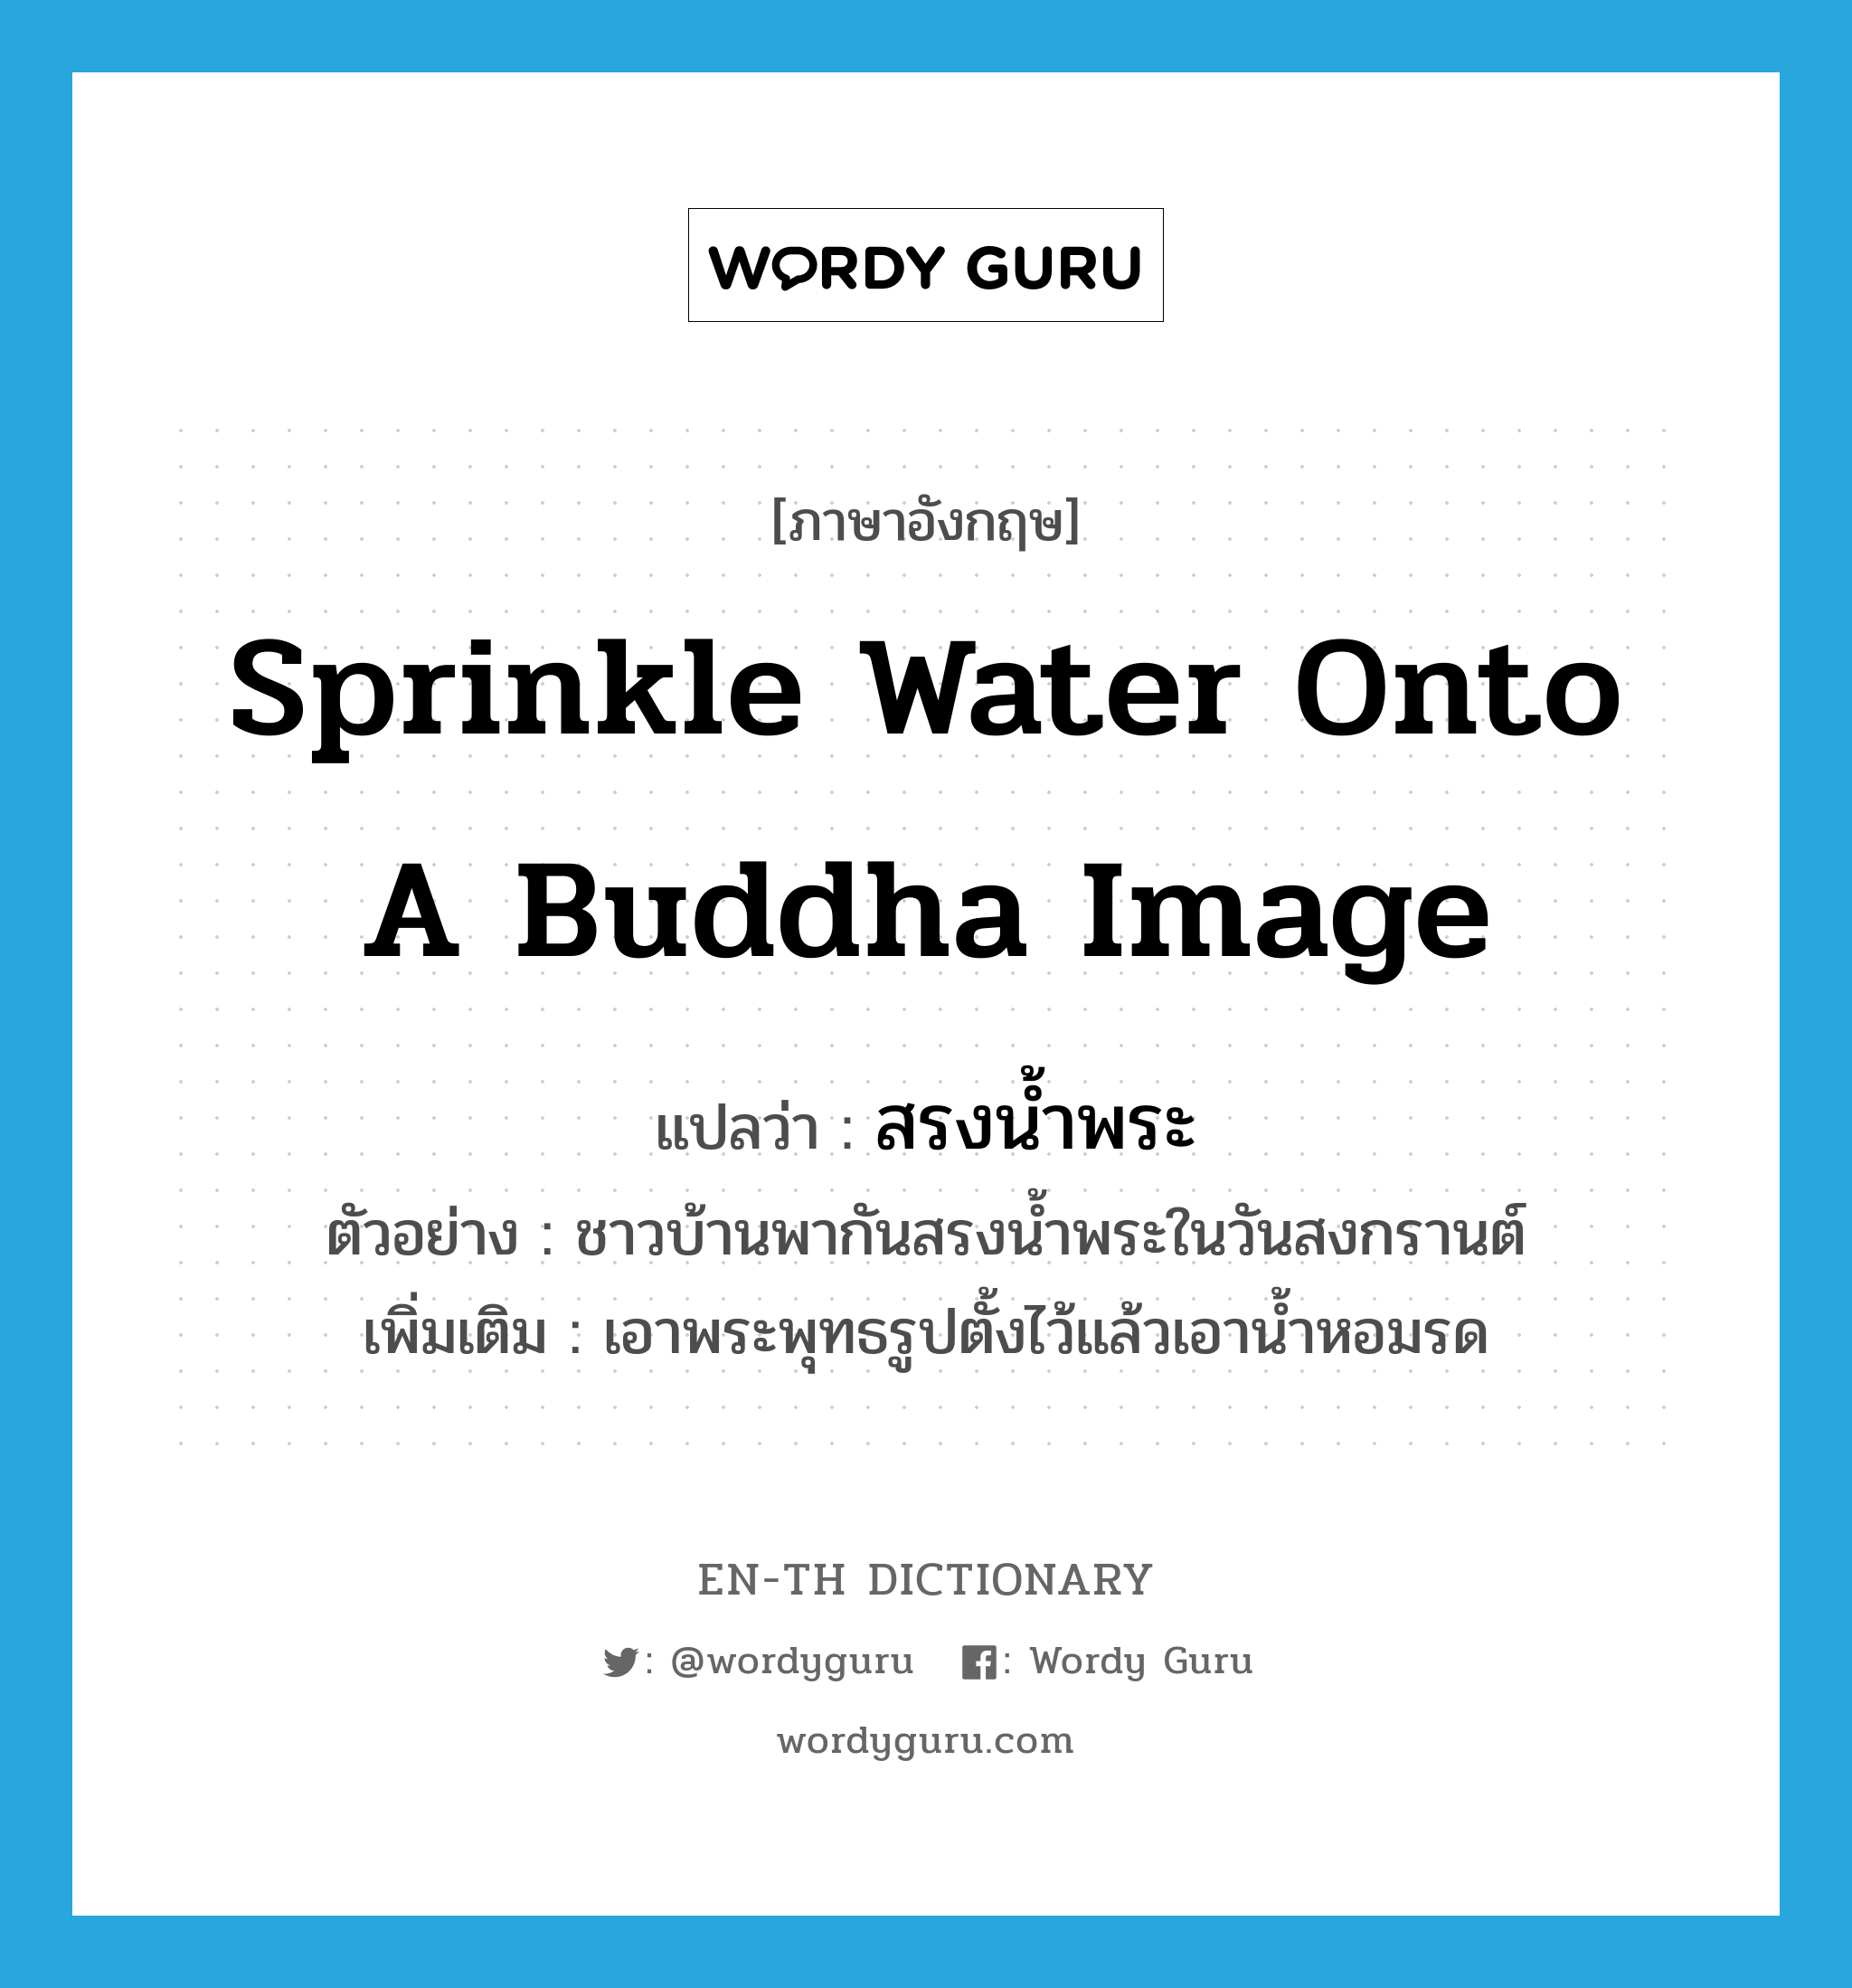 สรงน้ำพระ ภาษาอังกฤษ?, คำศัพท์ภาษาอังกฤษ สรงน้ำพระ แปลว่า sprinkle water onto a Buddha image ประเภท V ตัวอย่าง ชาวบ้านพากันสรงน้ำพระในวันสงกรานต์ เพิ่มเติม เอาพระพุทธรูปตั้งไว้แล้วเอาน้ำหอมรด หมวด V